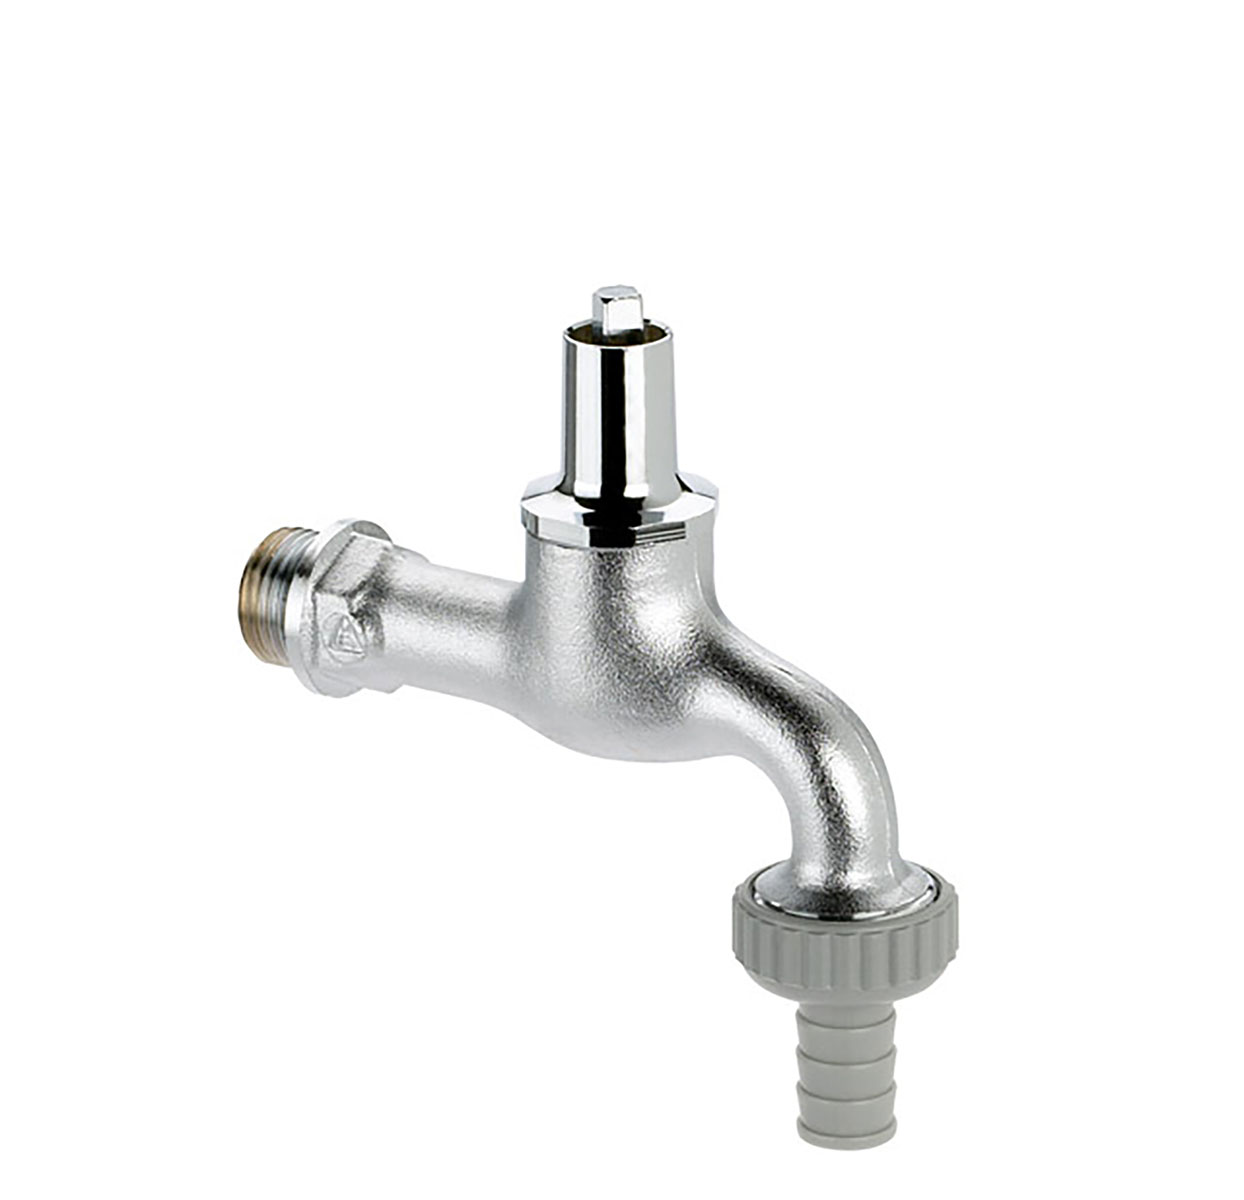 1031150 - CR-Brass draw-off tap - heavy variation socket key upper-part